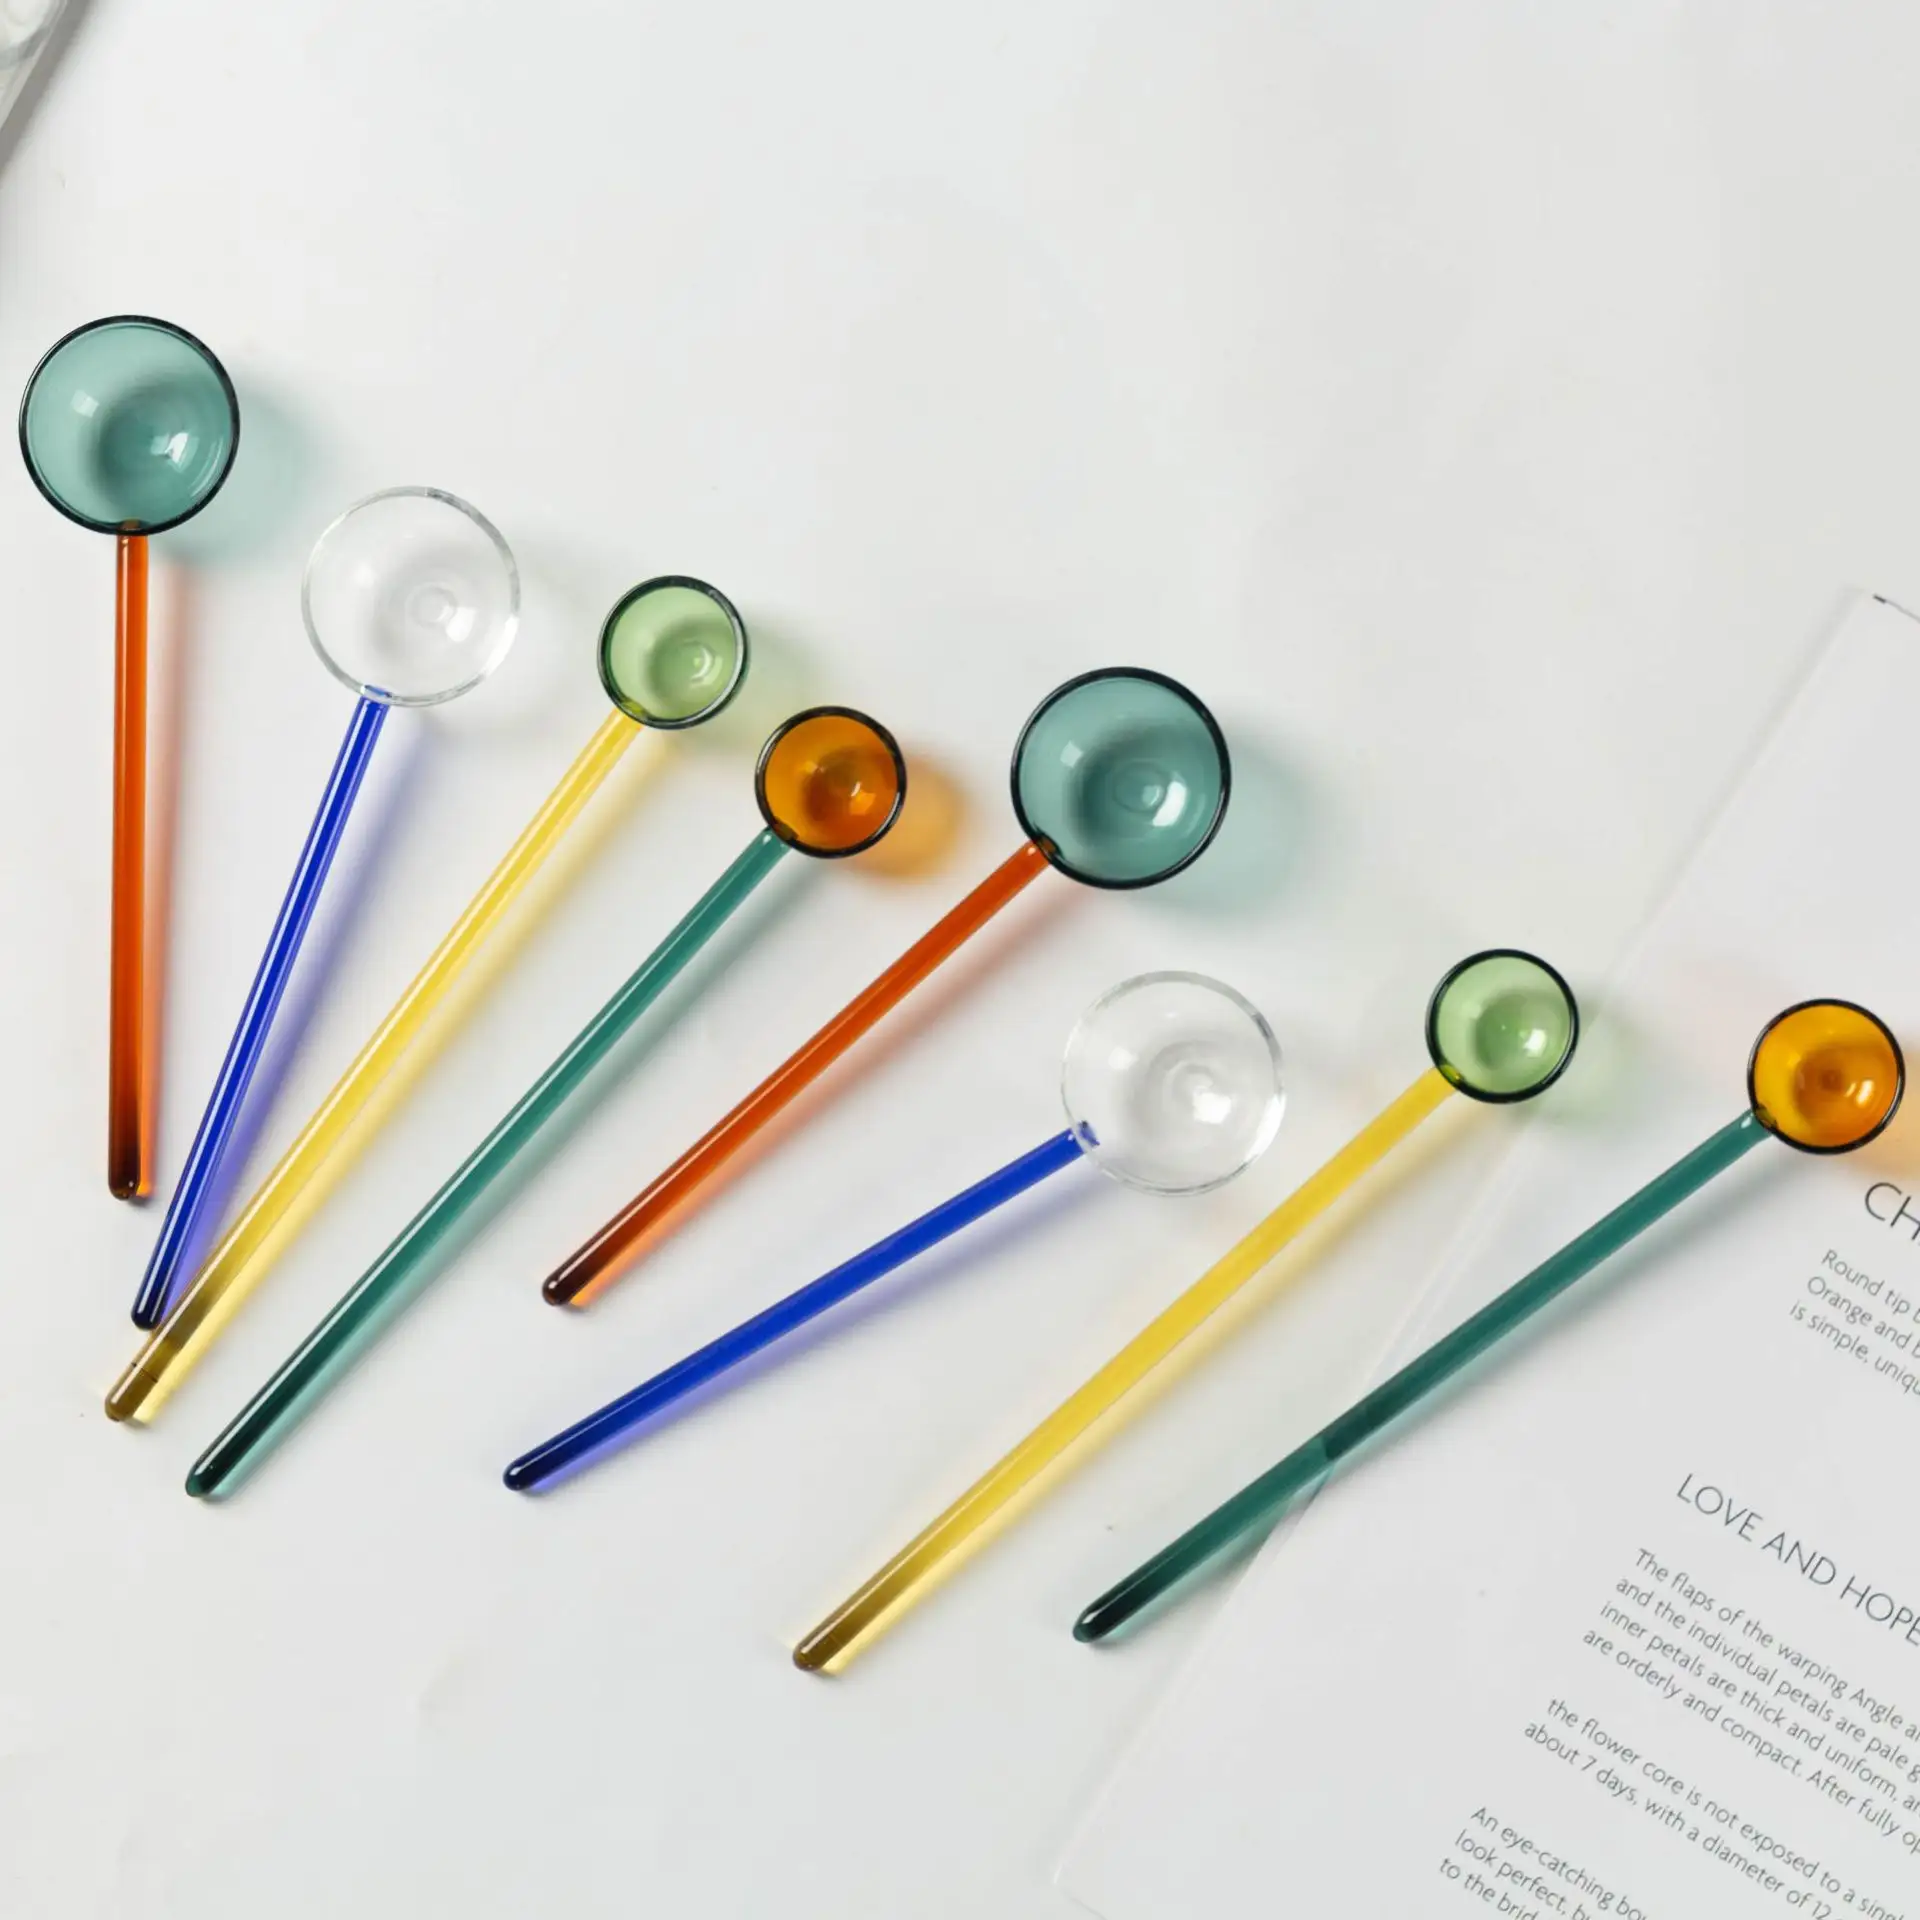 Ложка с круглой головкой, разноцветная стеклянная с длинной ручкой